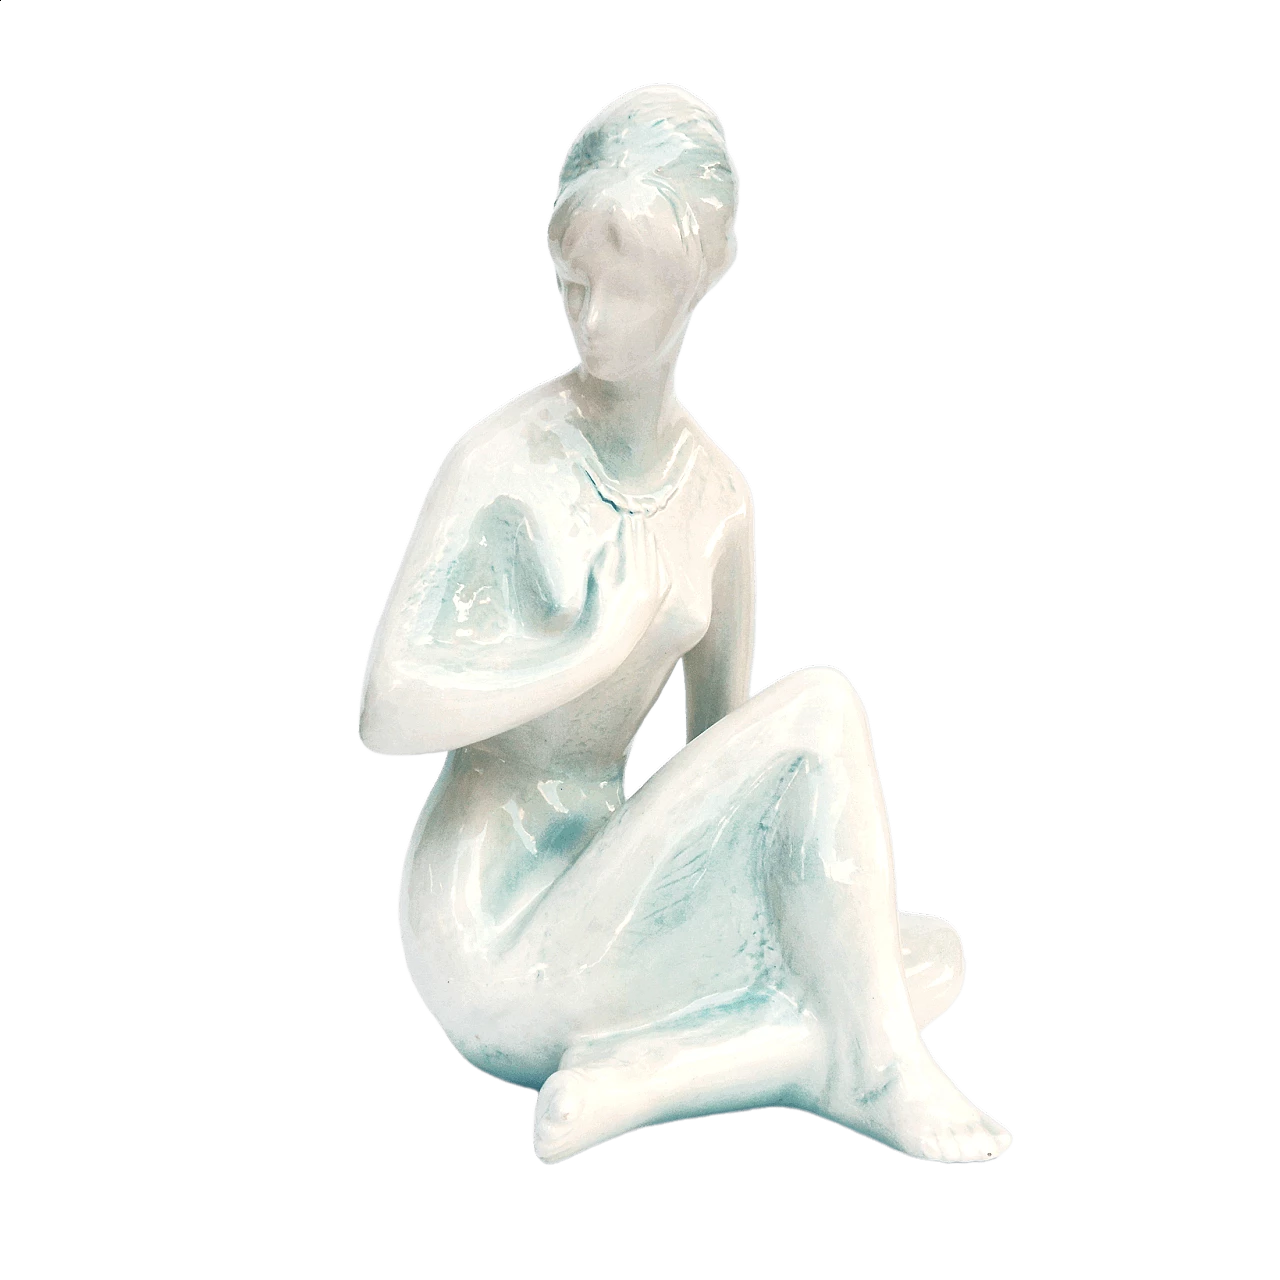 Female nude sculpture by Kokrda Jihokera Bechyně, 1960s 13